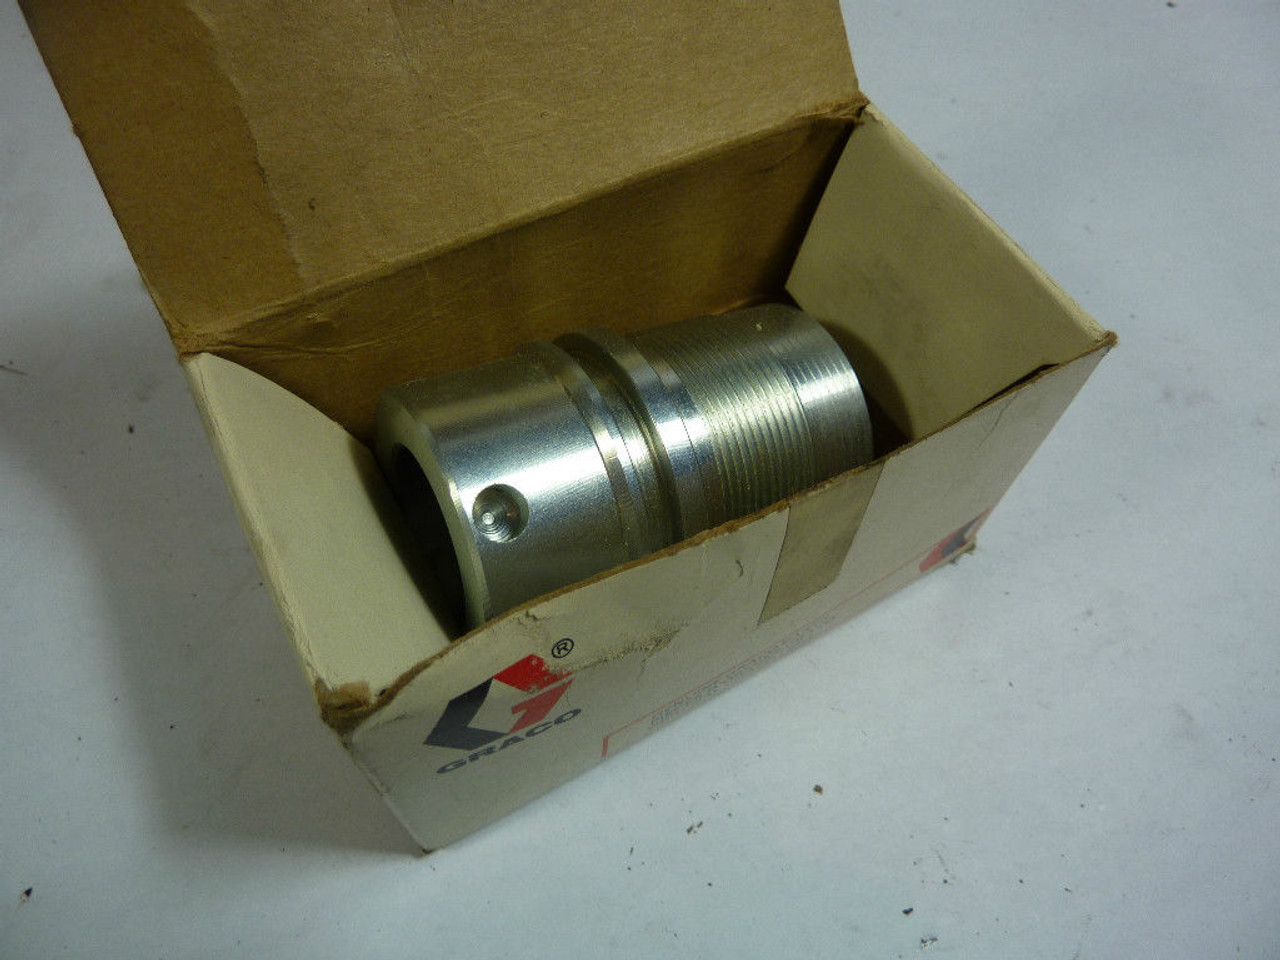 Graco 165-135 Cylinder Gear Nut ! NEW !